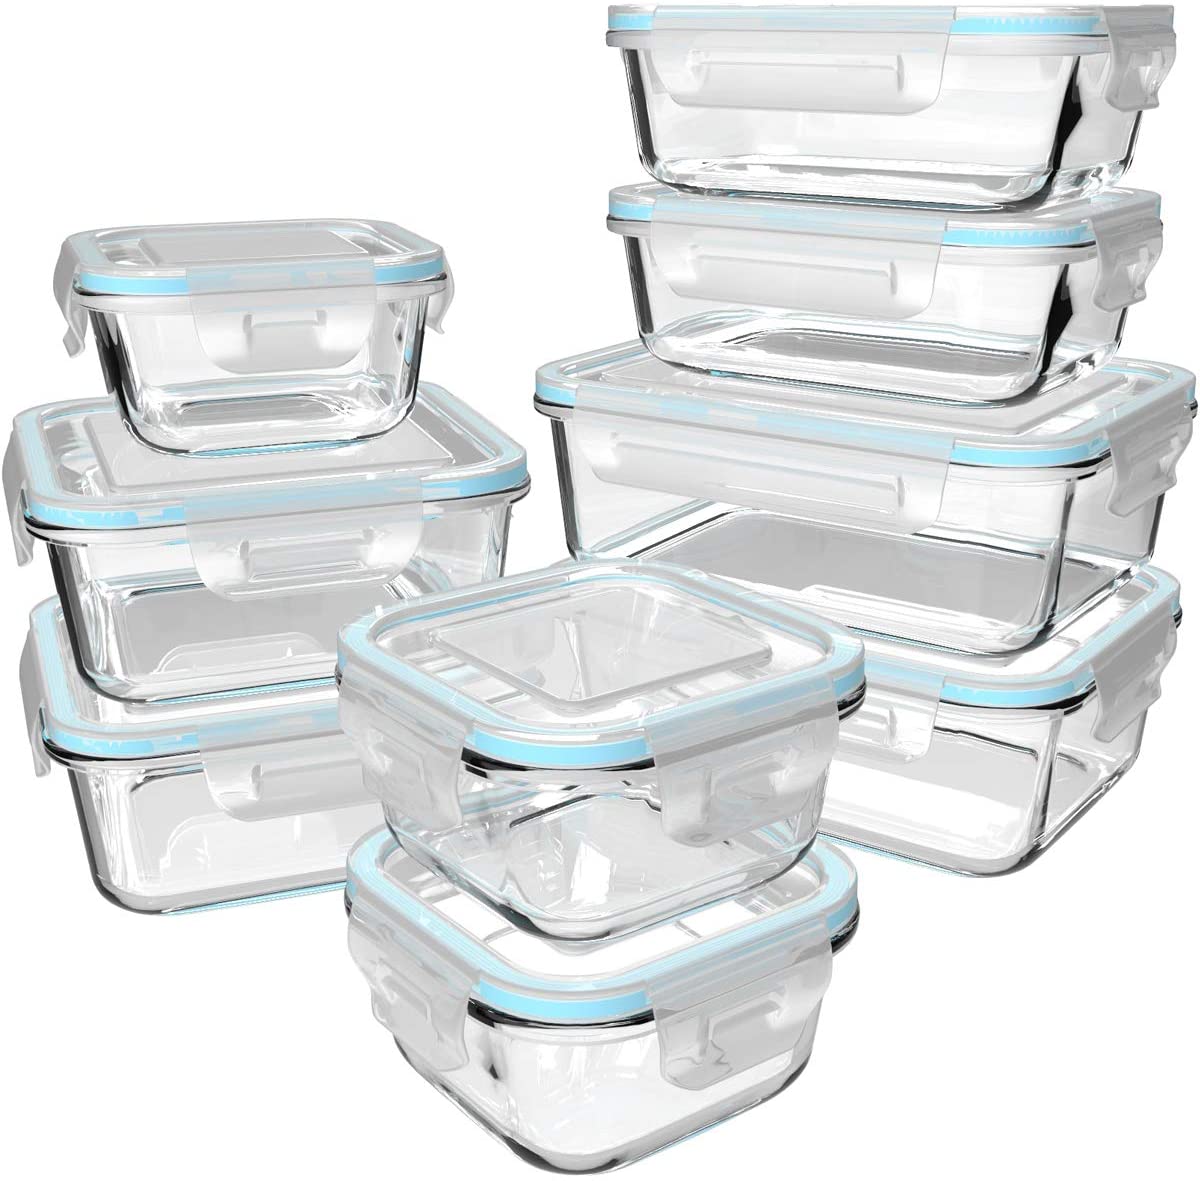 S SALIENT Meal Prep BPA-Free Glass Food Storage, 18-Piece